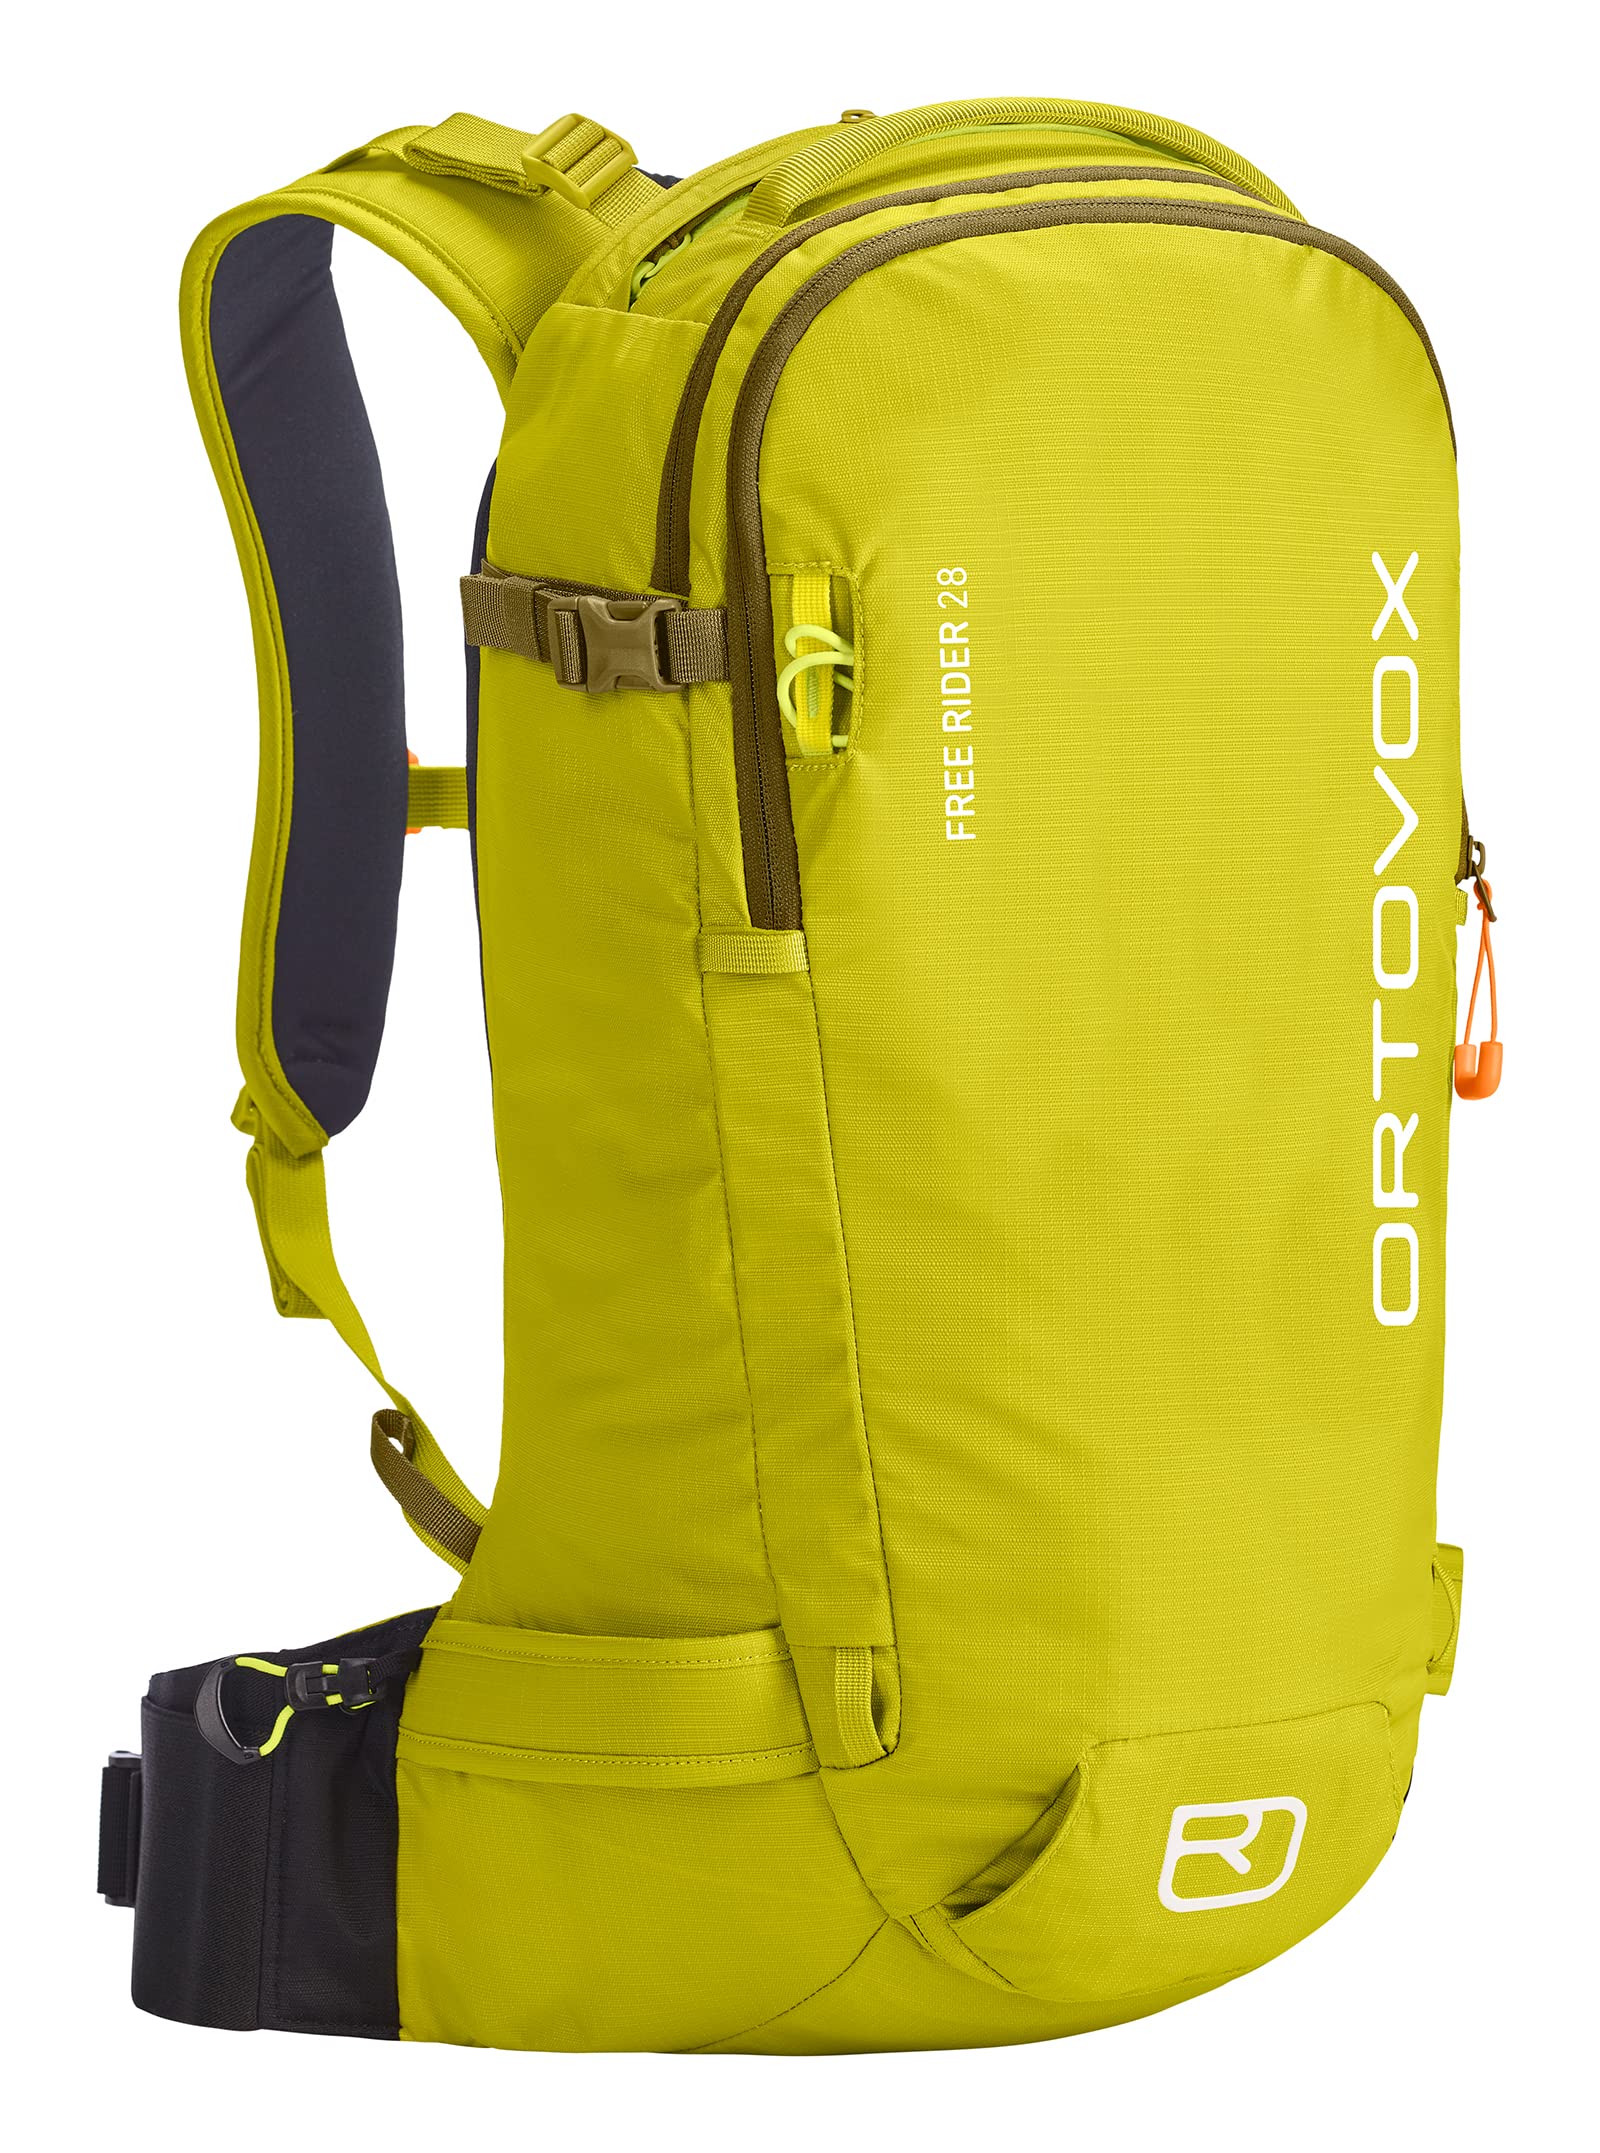 Ortovox Free Rider 28 Rucksack, gelb (Dirty Gänseblümchen gelb), 28 litros